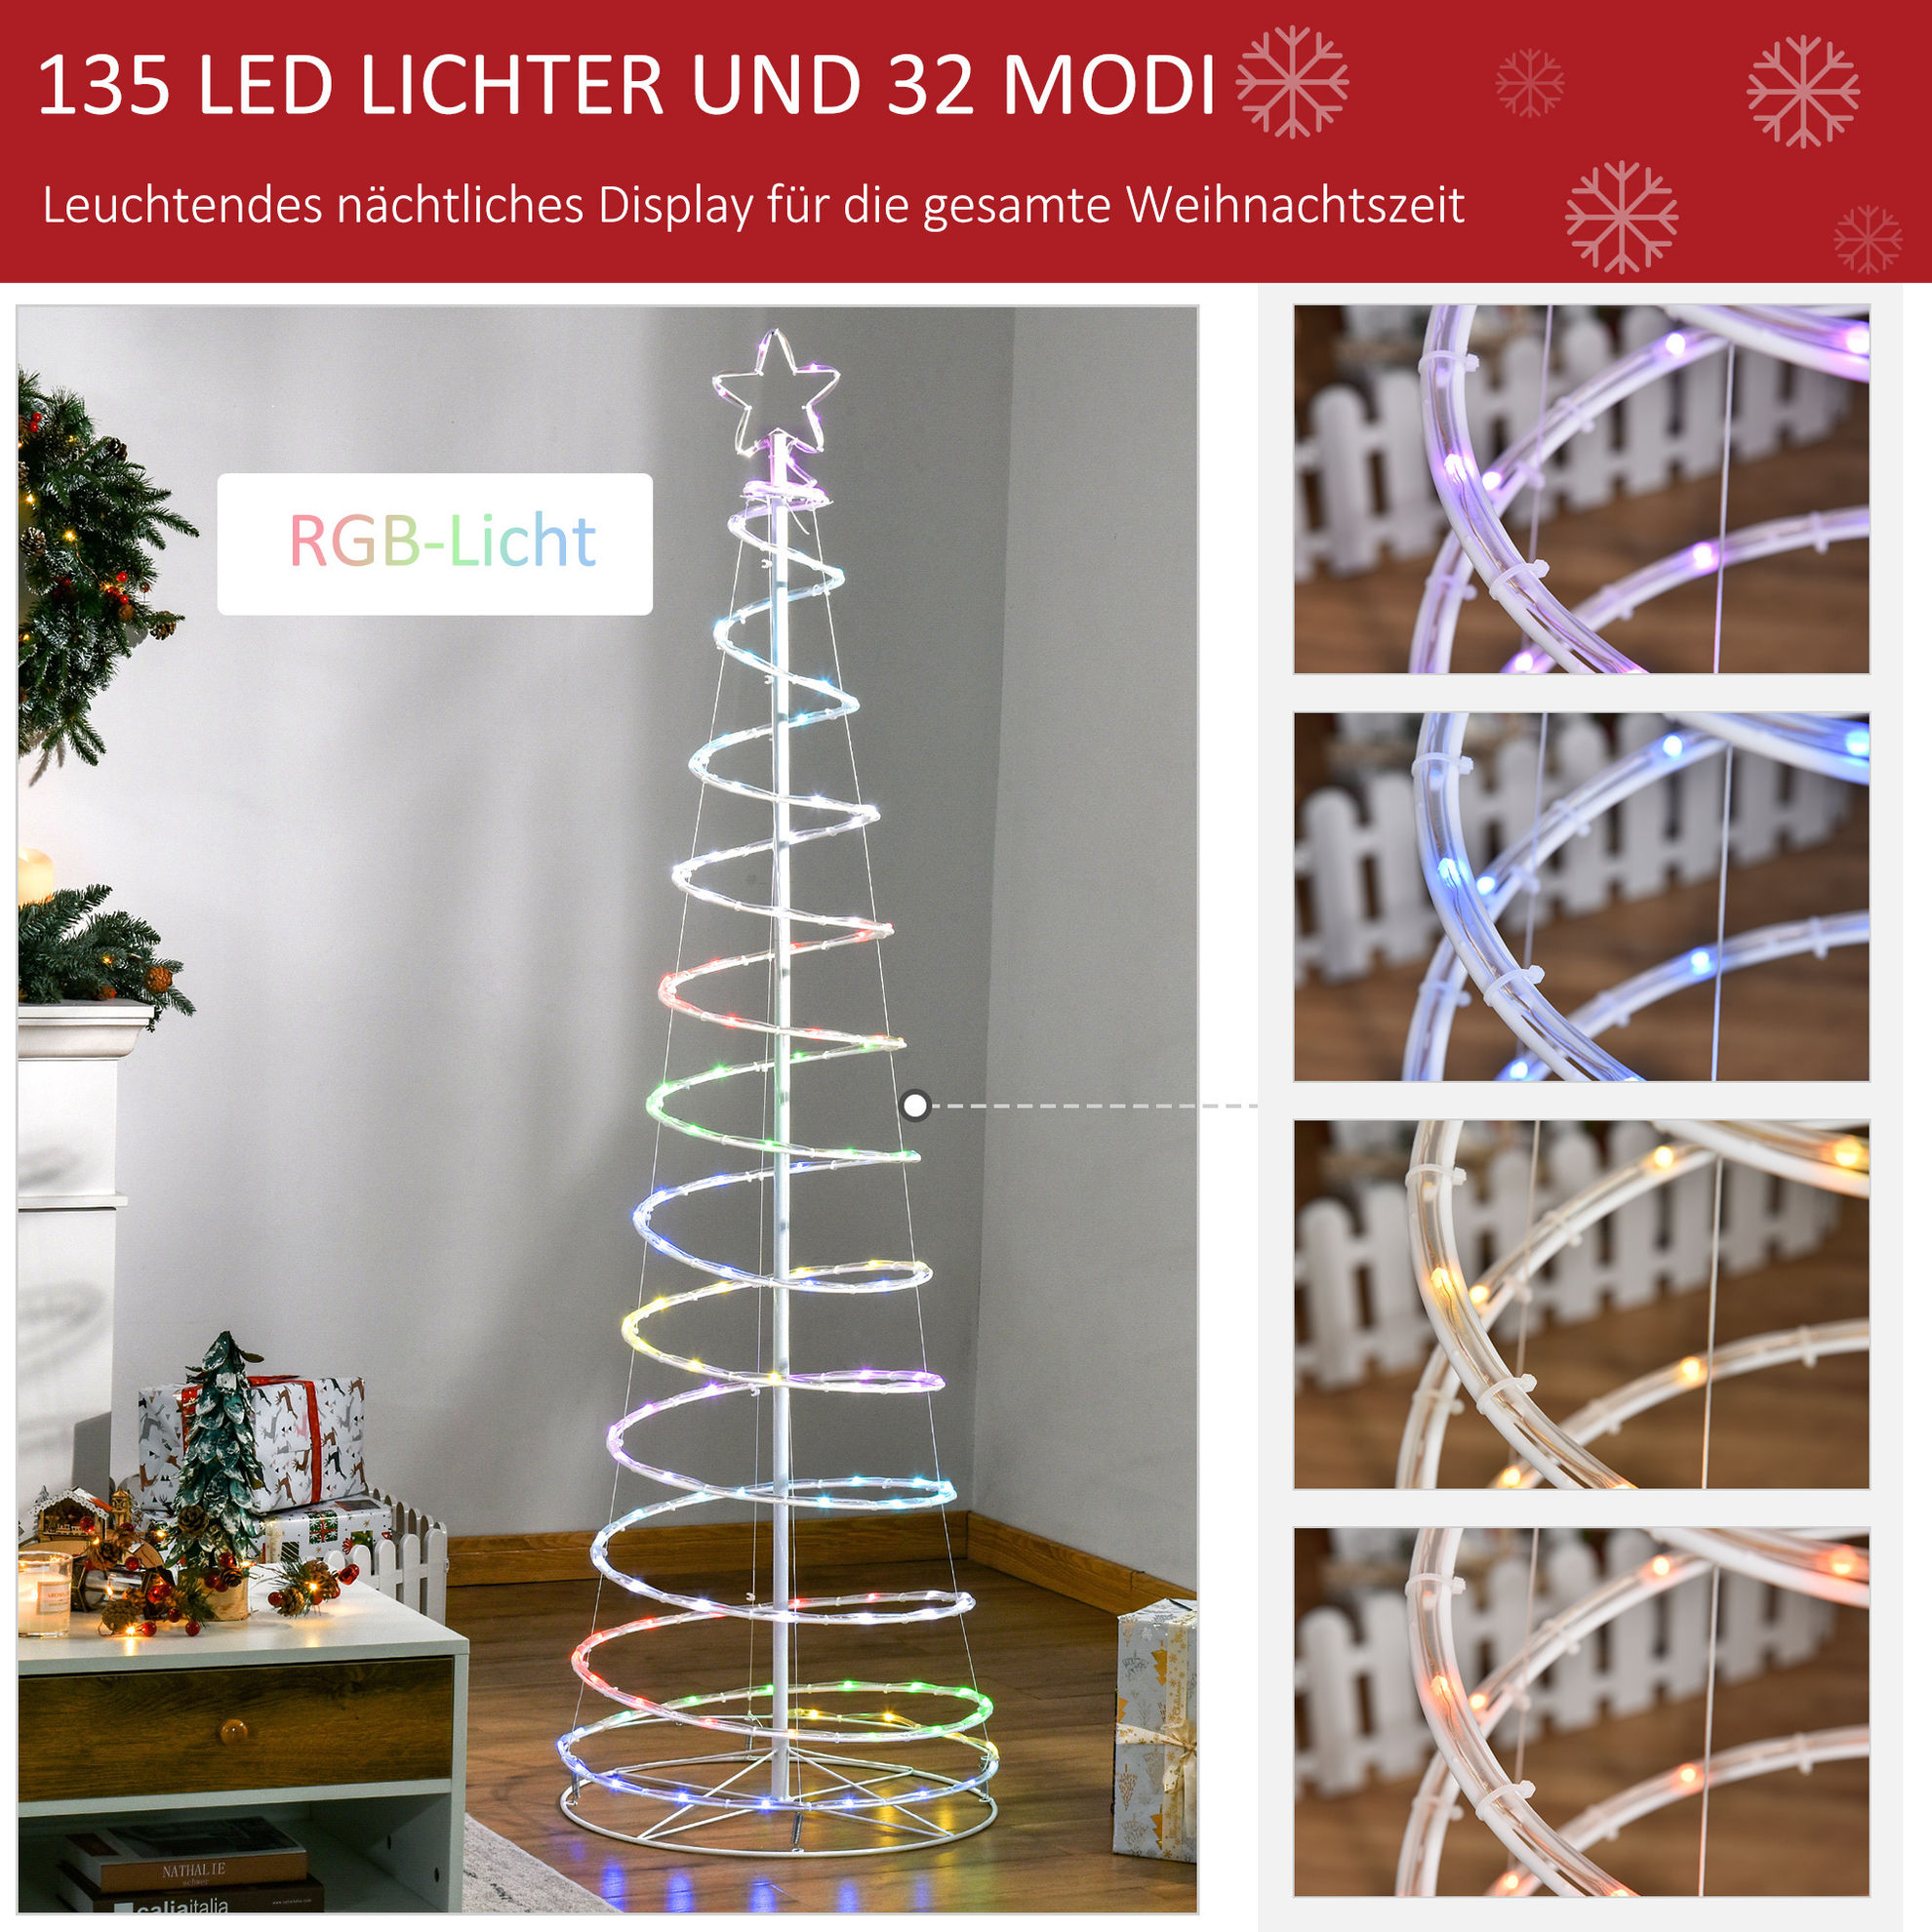 https://i.weltbild.de/p/spiralbaum-led-135-led-lichter-und-32-modi-rgb-licht-324544382.jpg?v=7&wp=_max